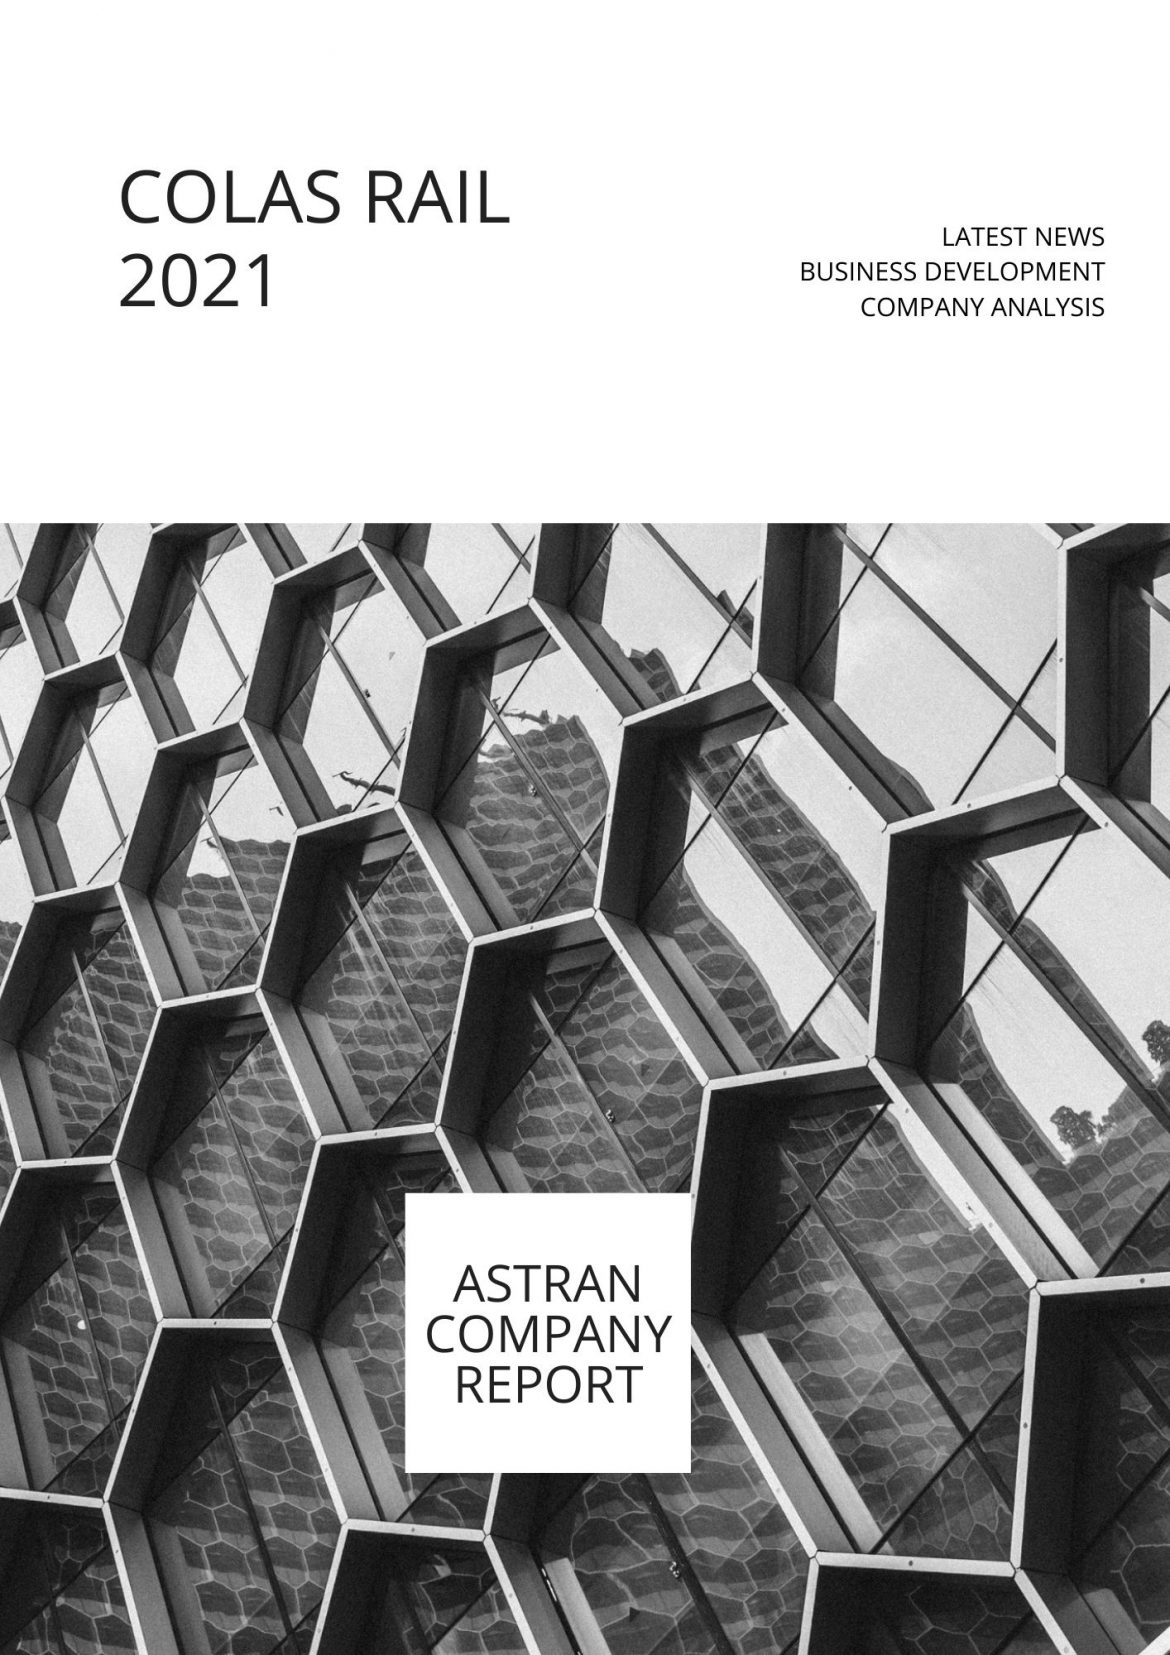 Company Report & Profile Colas Rail 2021